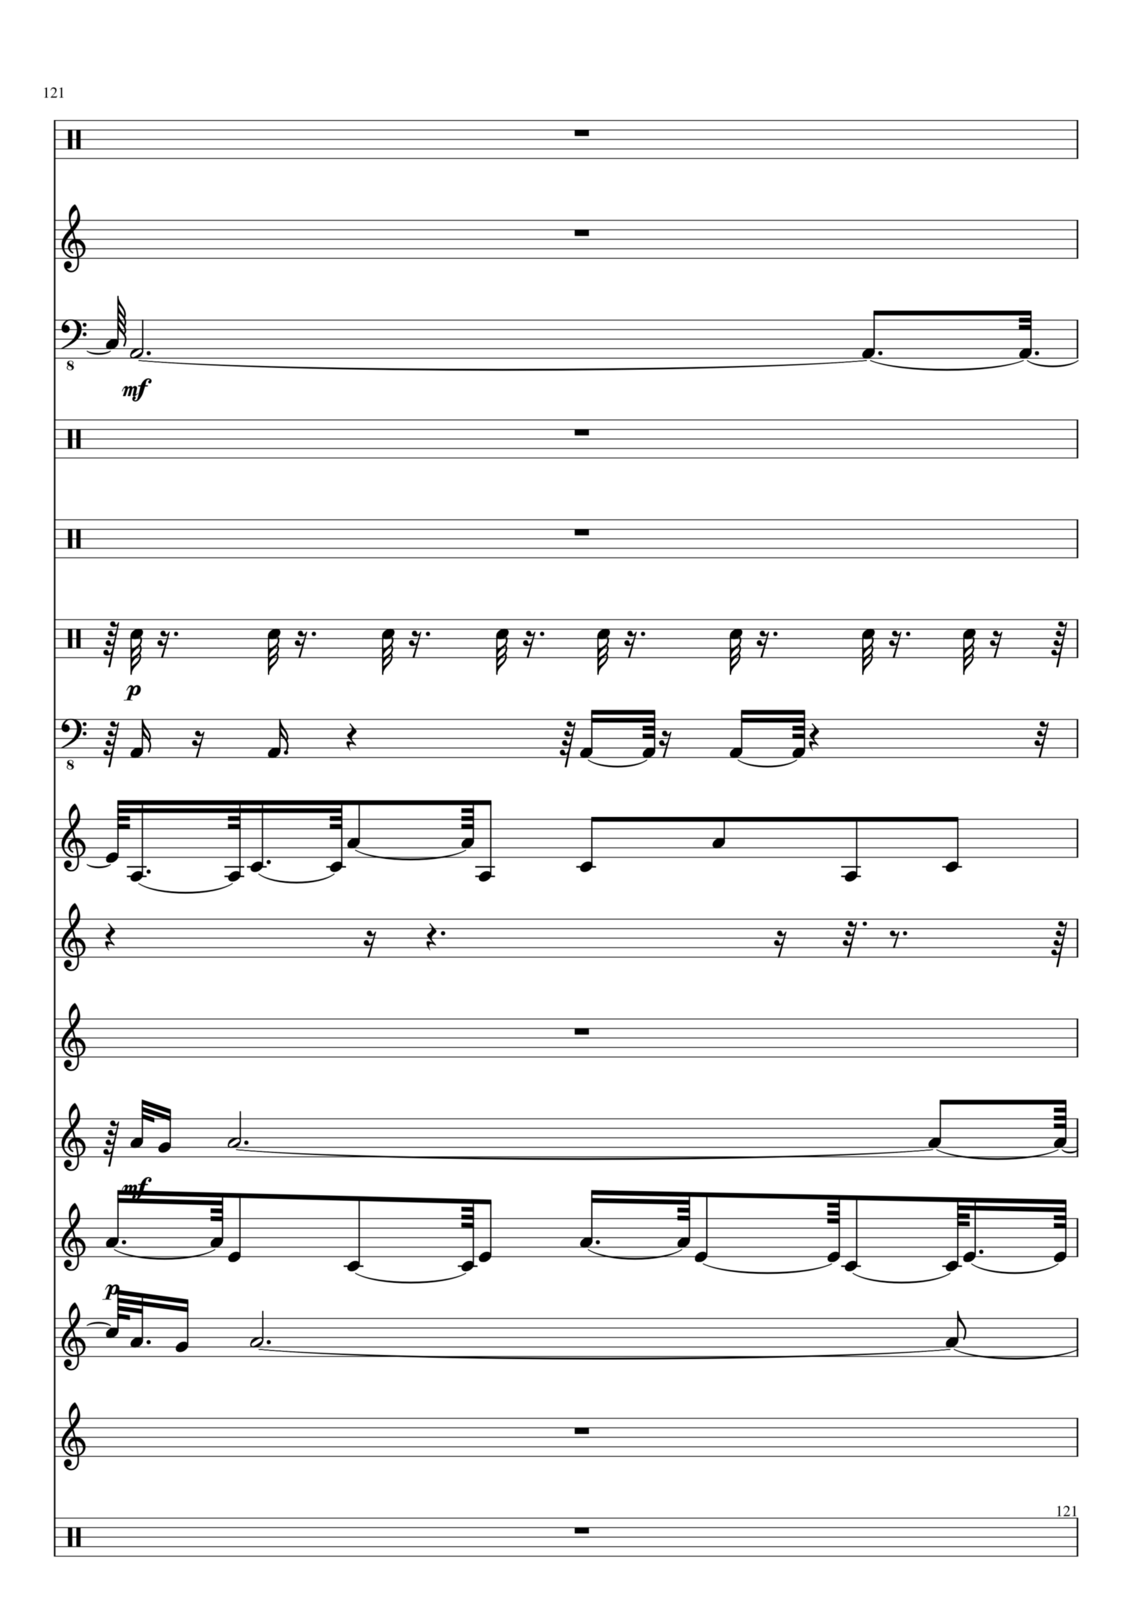 Utro polinyi slide, Image 121